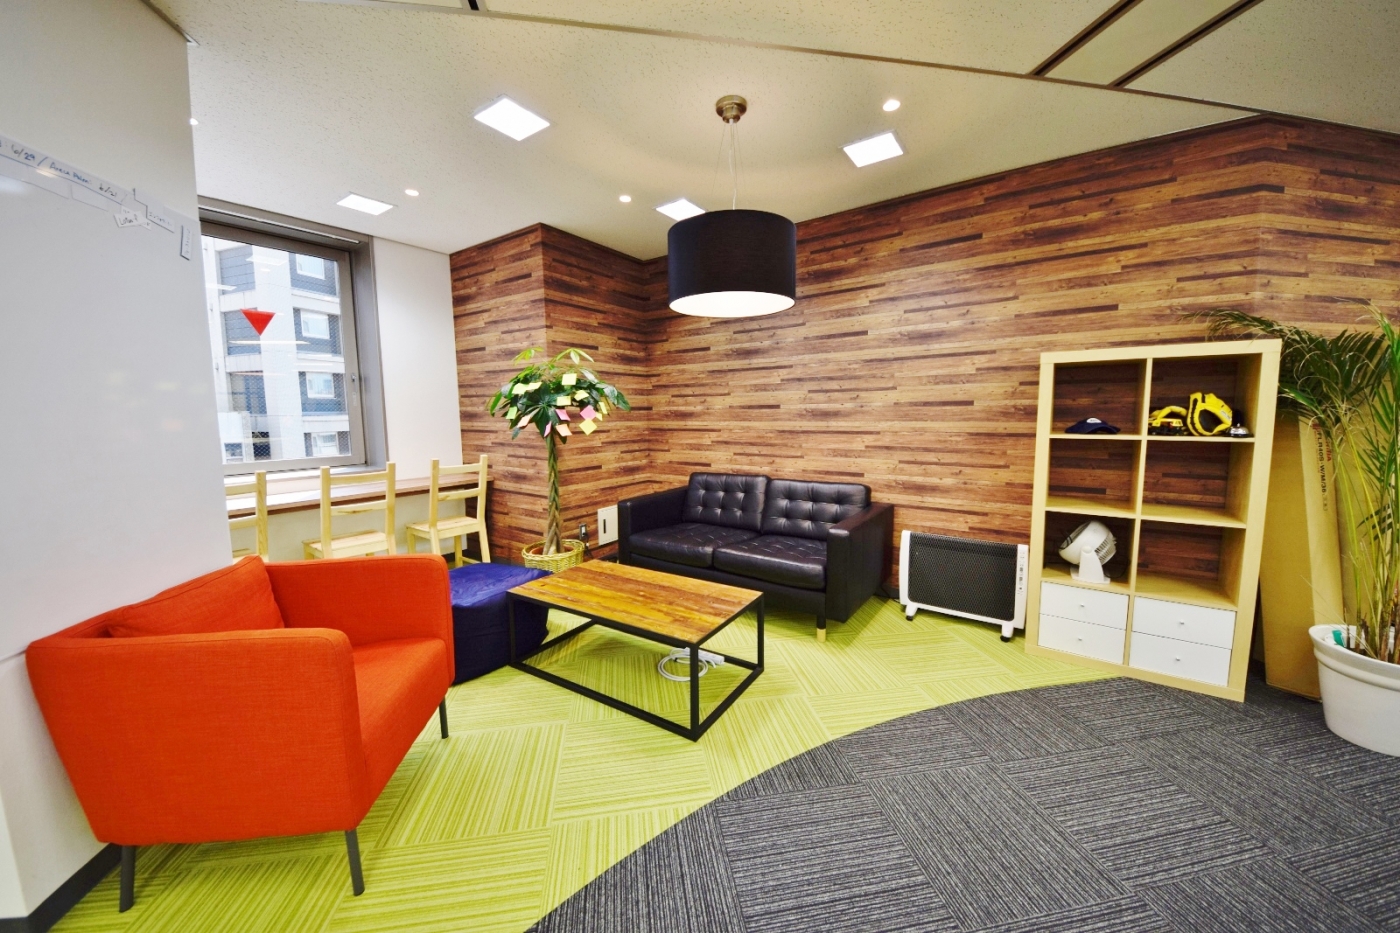 オフィスデザイン実績～アールのエントランスが印象的な、グローバル展開を表現したエントランス					